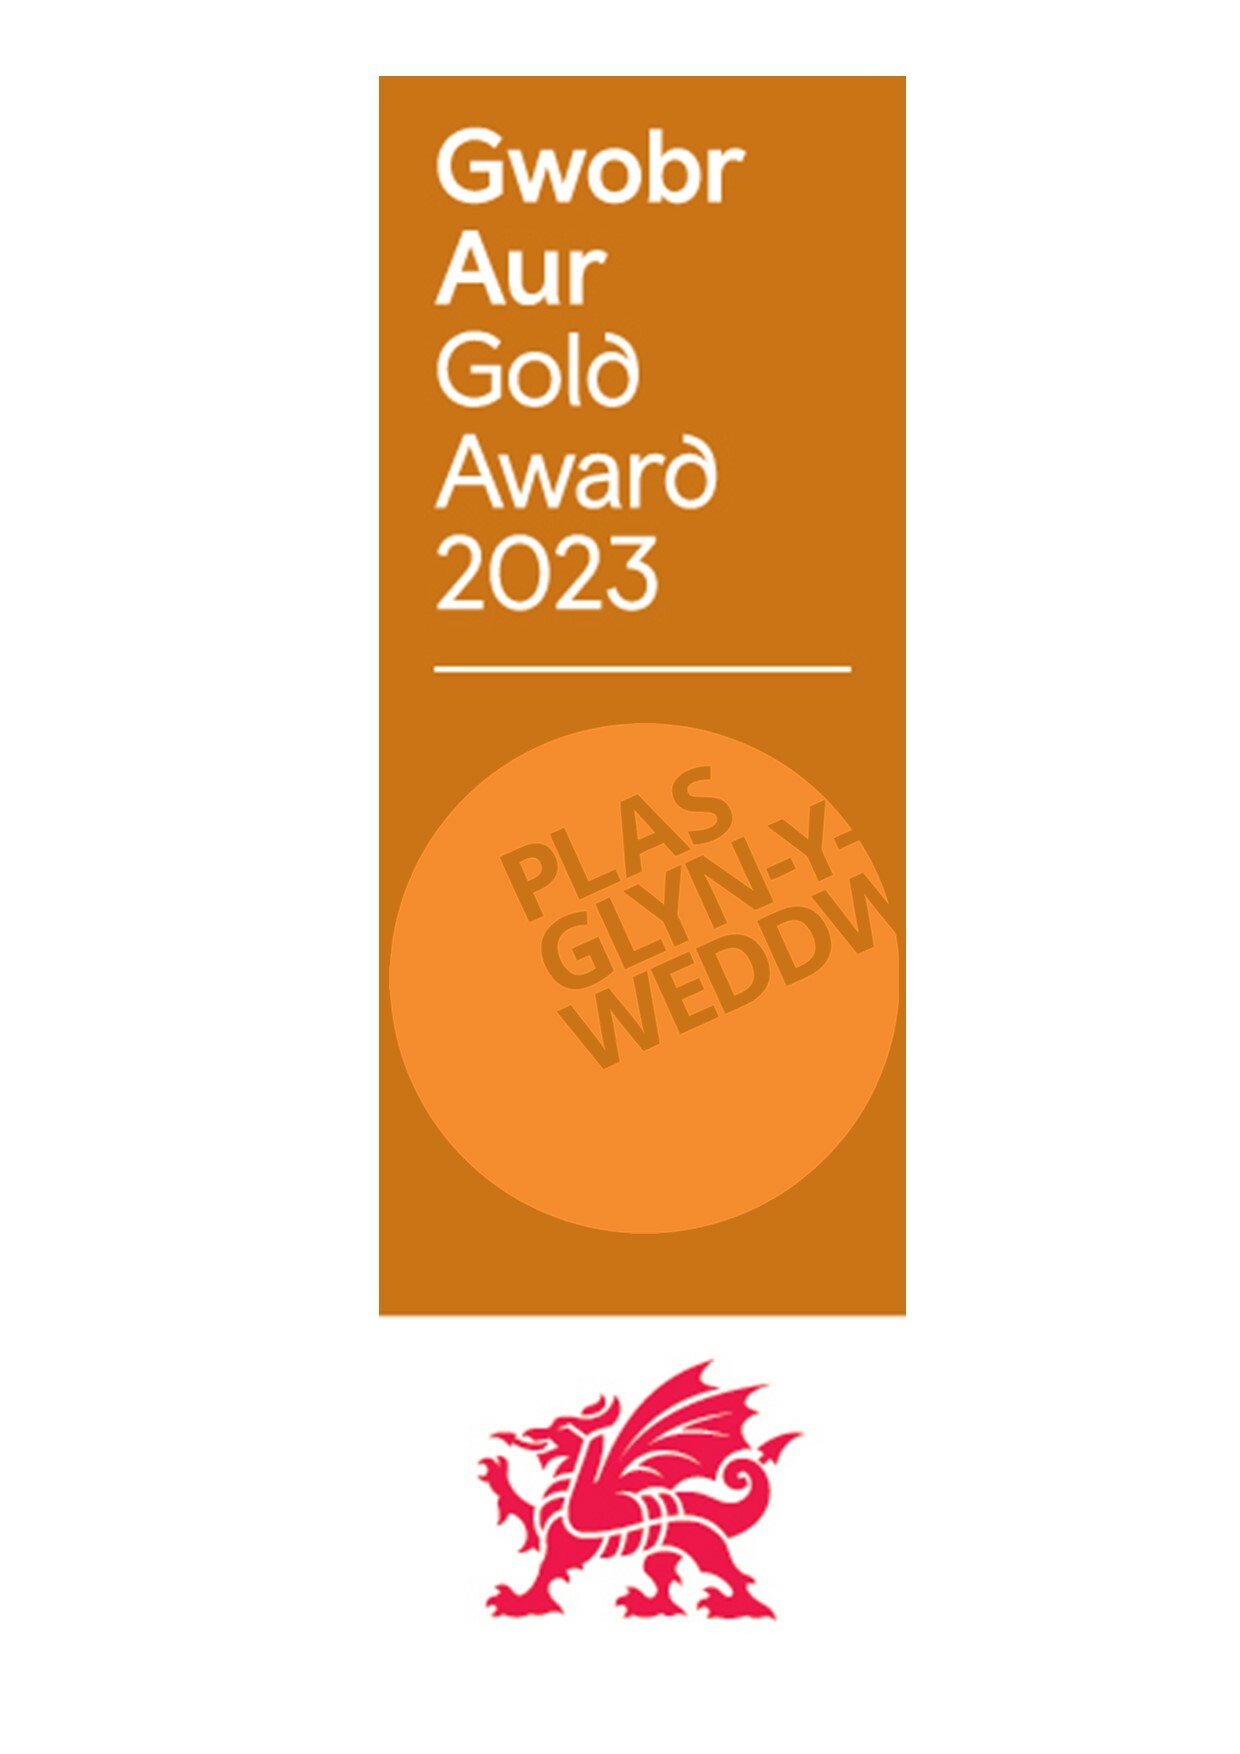 April 2023 - Visit Wales Gold Award